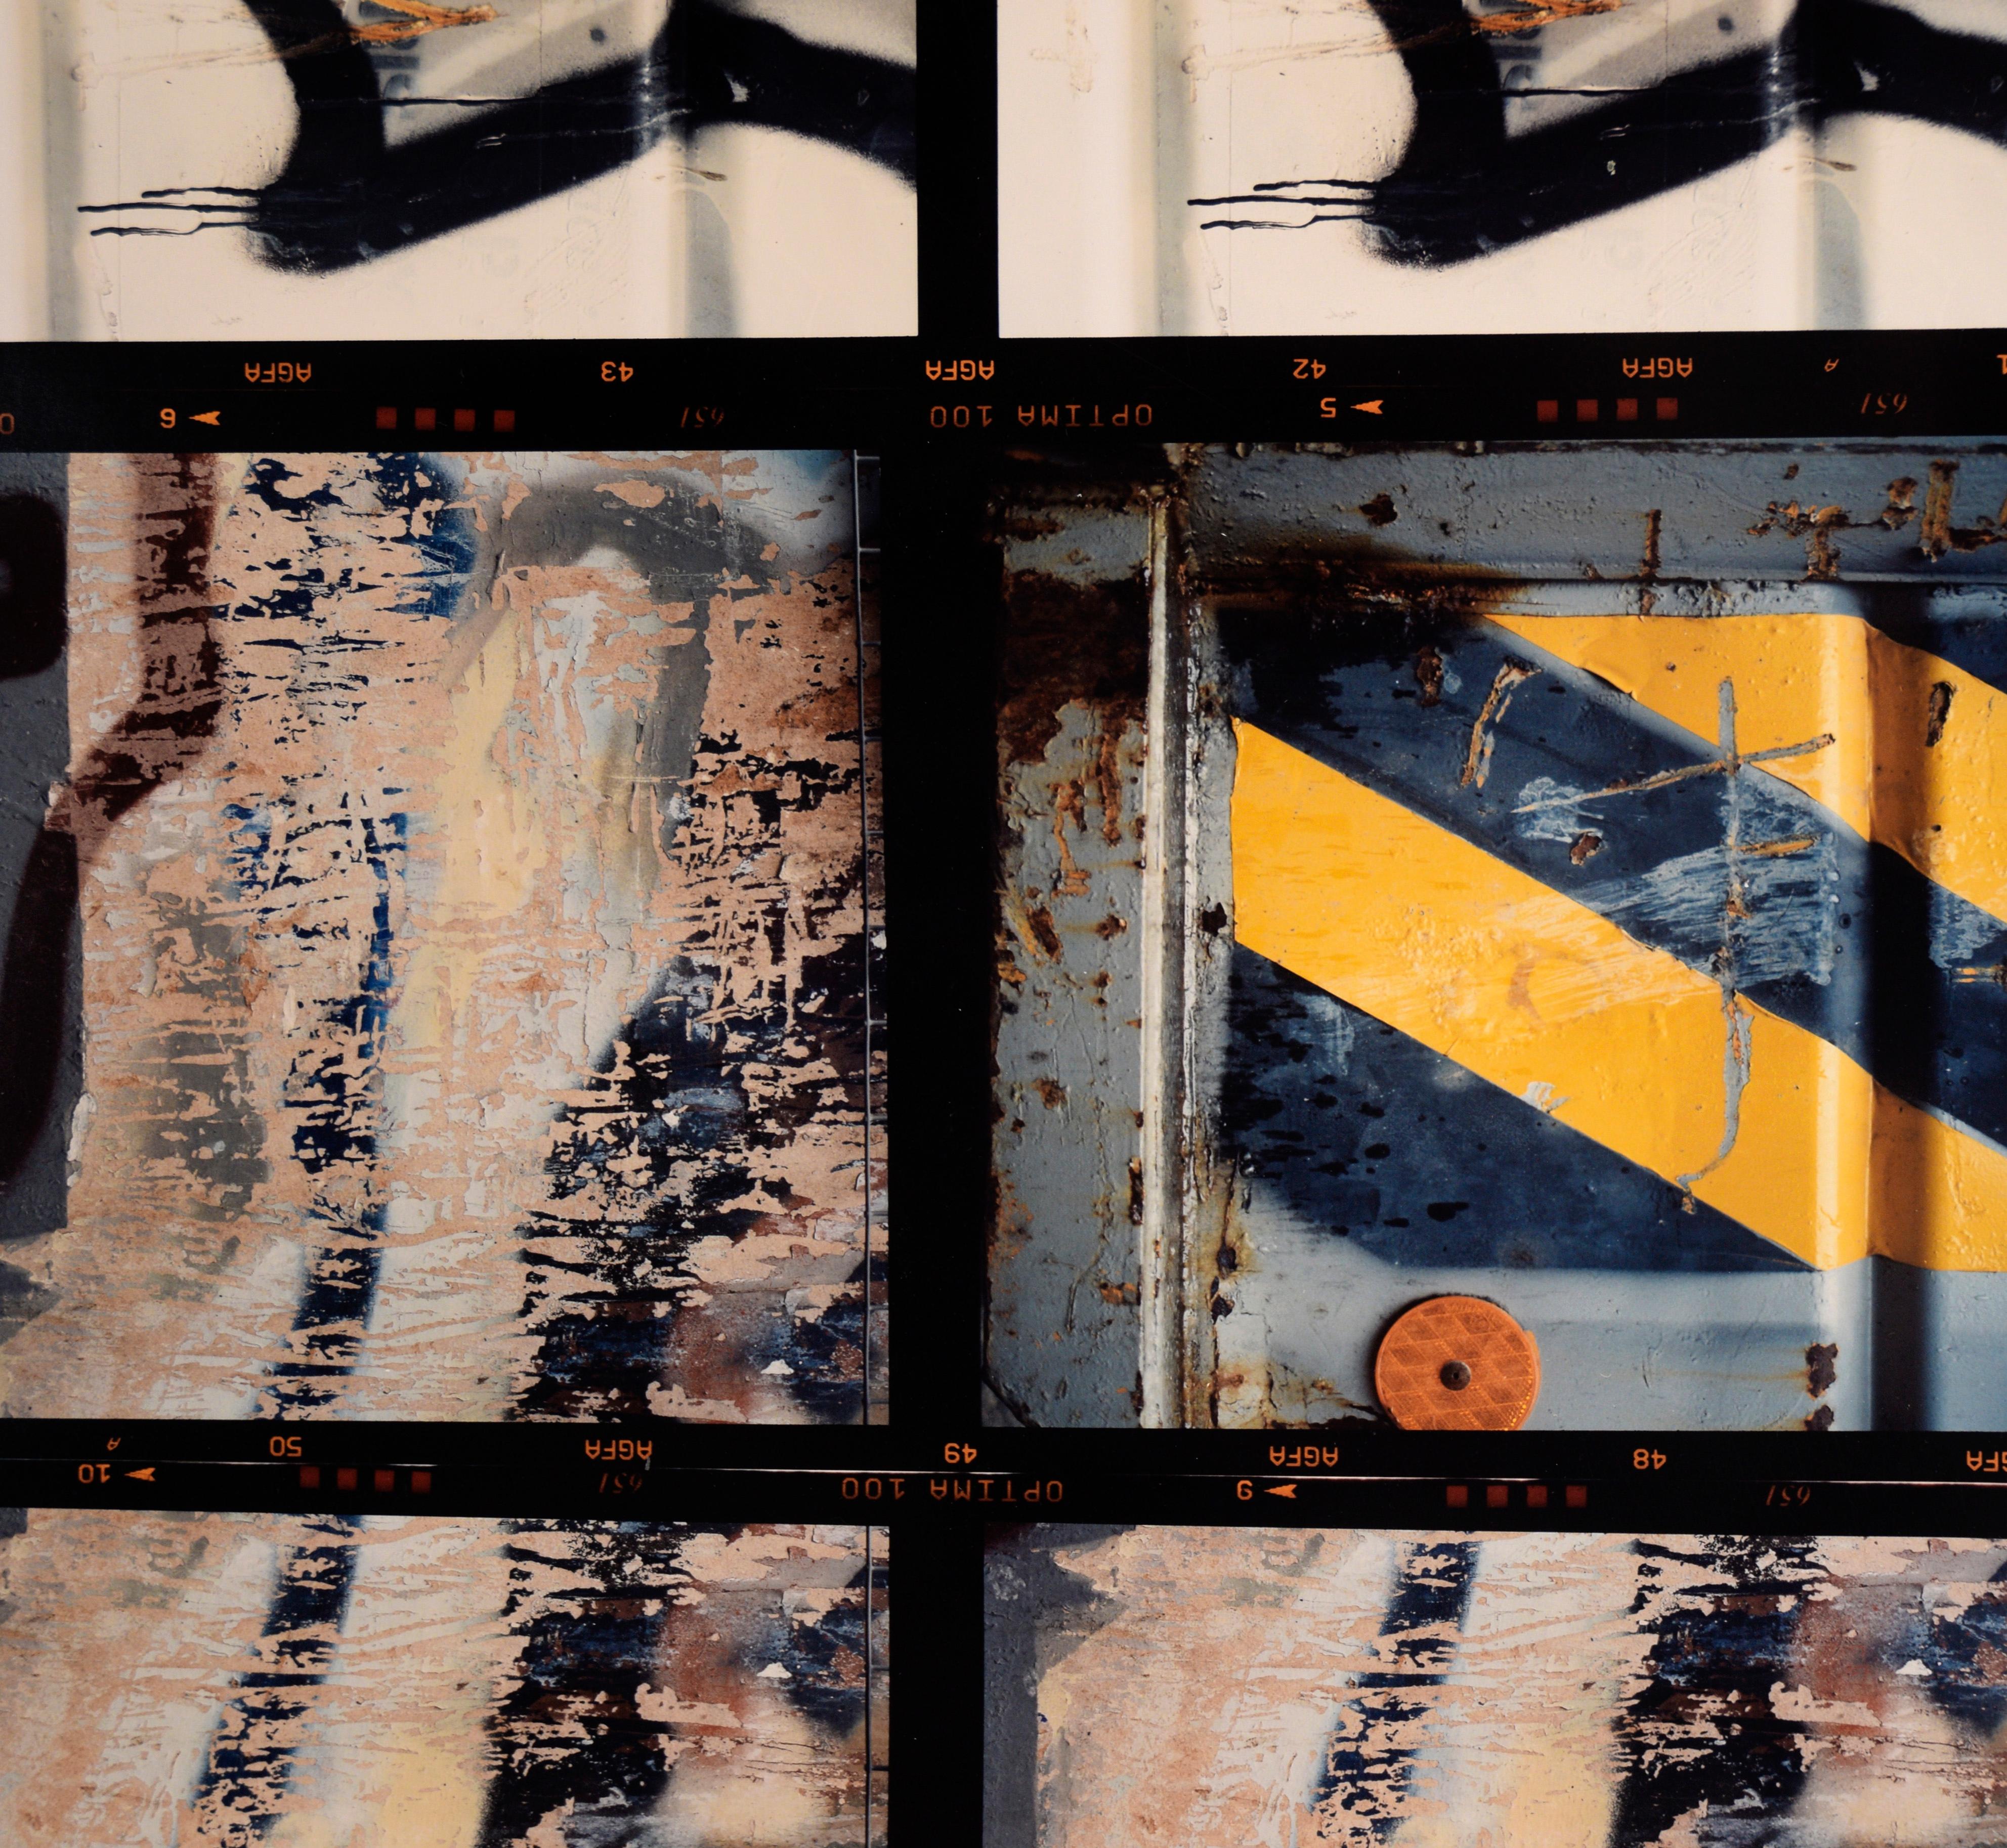 12 Fotos (Graffiti und Streifen) – großformatige texturierte Fotografien

Serie von detaillierten Makroaufnahmen von Bill Clark (Amerikaner, 20. Jahrhundert). Diese Fotoserie zeigt verschiedene strukturierte und lackierte Oberflächen, sowohl aus